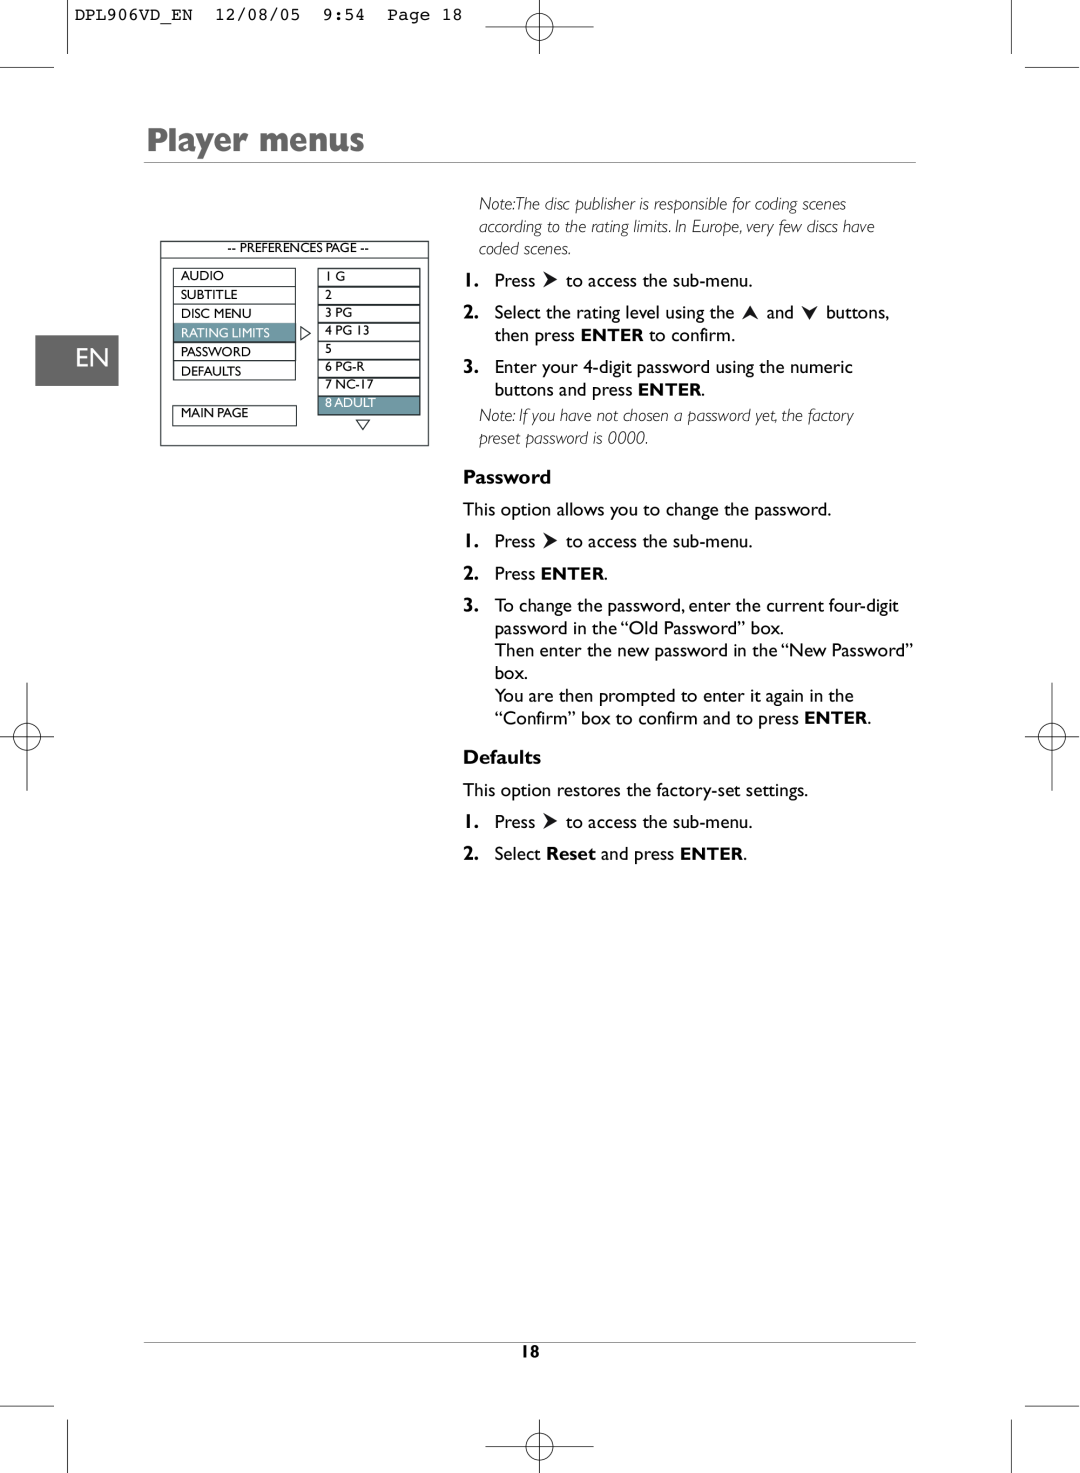 Technicolor - Thomson DPL906VD_EN manual Player menus, Password, Defaults, Rating Limits 